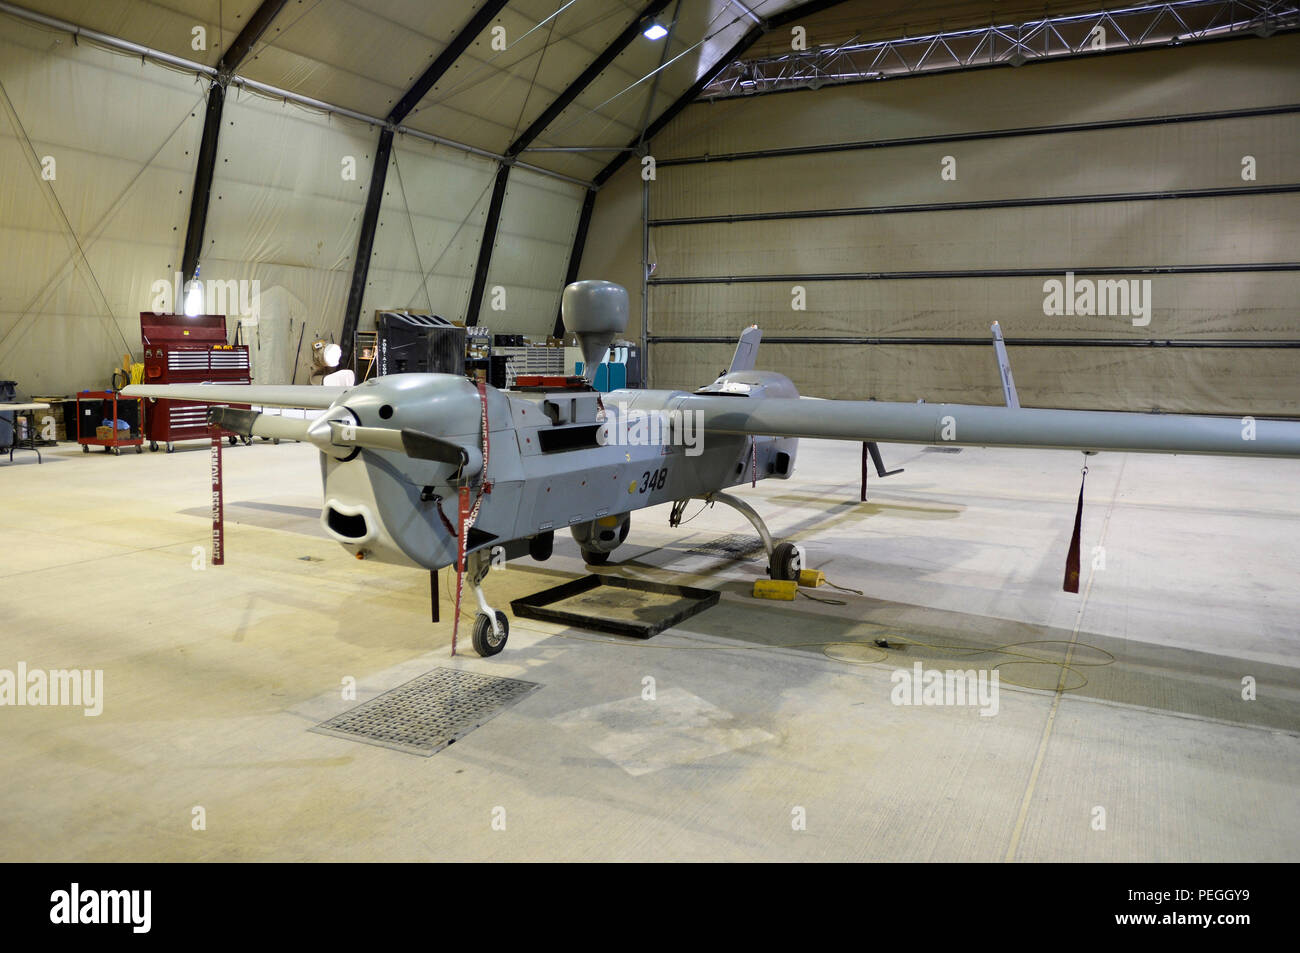 Aeródromo de Kandahar, Afganistán (Ago. 6, 2015) UN MQ-5B Hunter está dispuesta en una cabeza de cobre (copperhead) Task Force Tactical Vehículo Aéreo No Tripulado desapego hangar en el Aeródromo de Kandahar. El MQ-5B es un multi-misión UAV equipado con radar de apertura sintética en miniatura, o cabeza de cobre (copperhead) sistema para detectar artefactos explosivos improvisados con gran éxito en Afganistán para la coalición y las fuerzas de seguridad afganas. (Ee.Uu. Foto de la Marina por el teniente Kristine Volk/liberado) Foto de stock